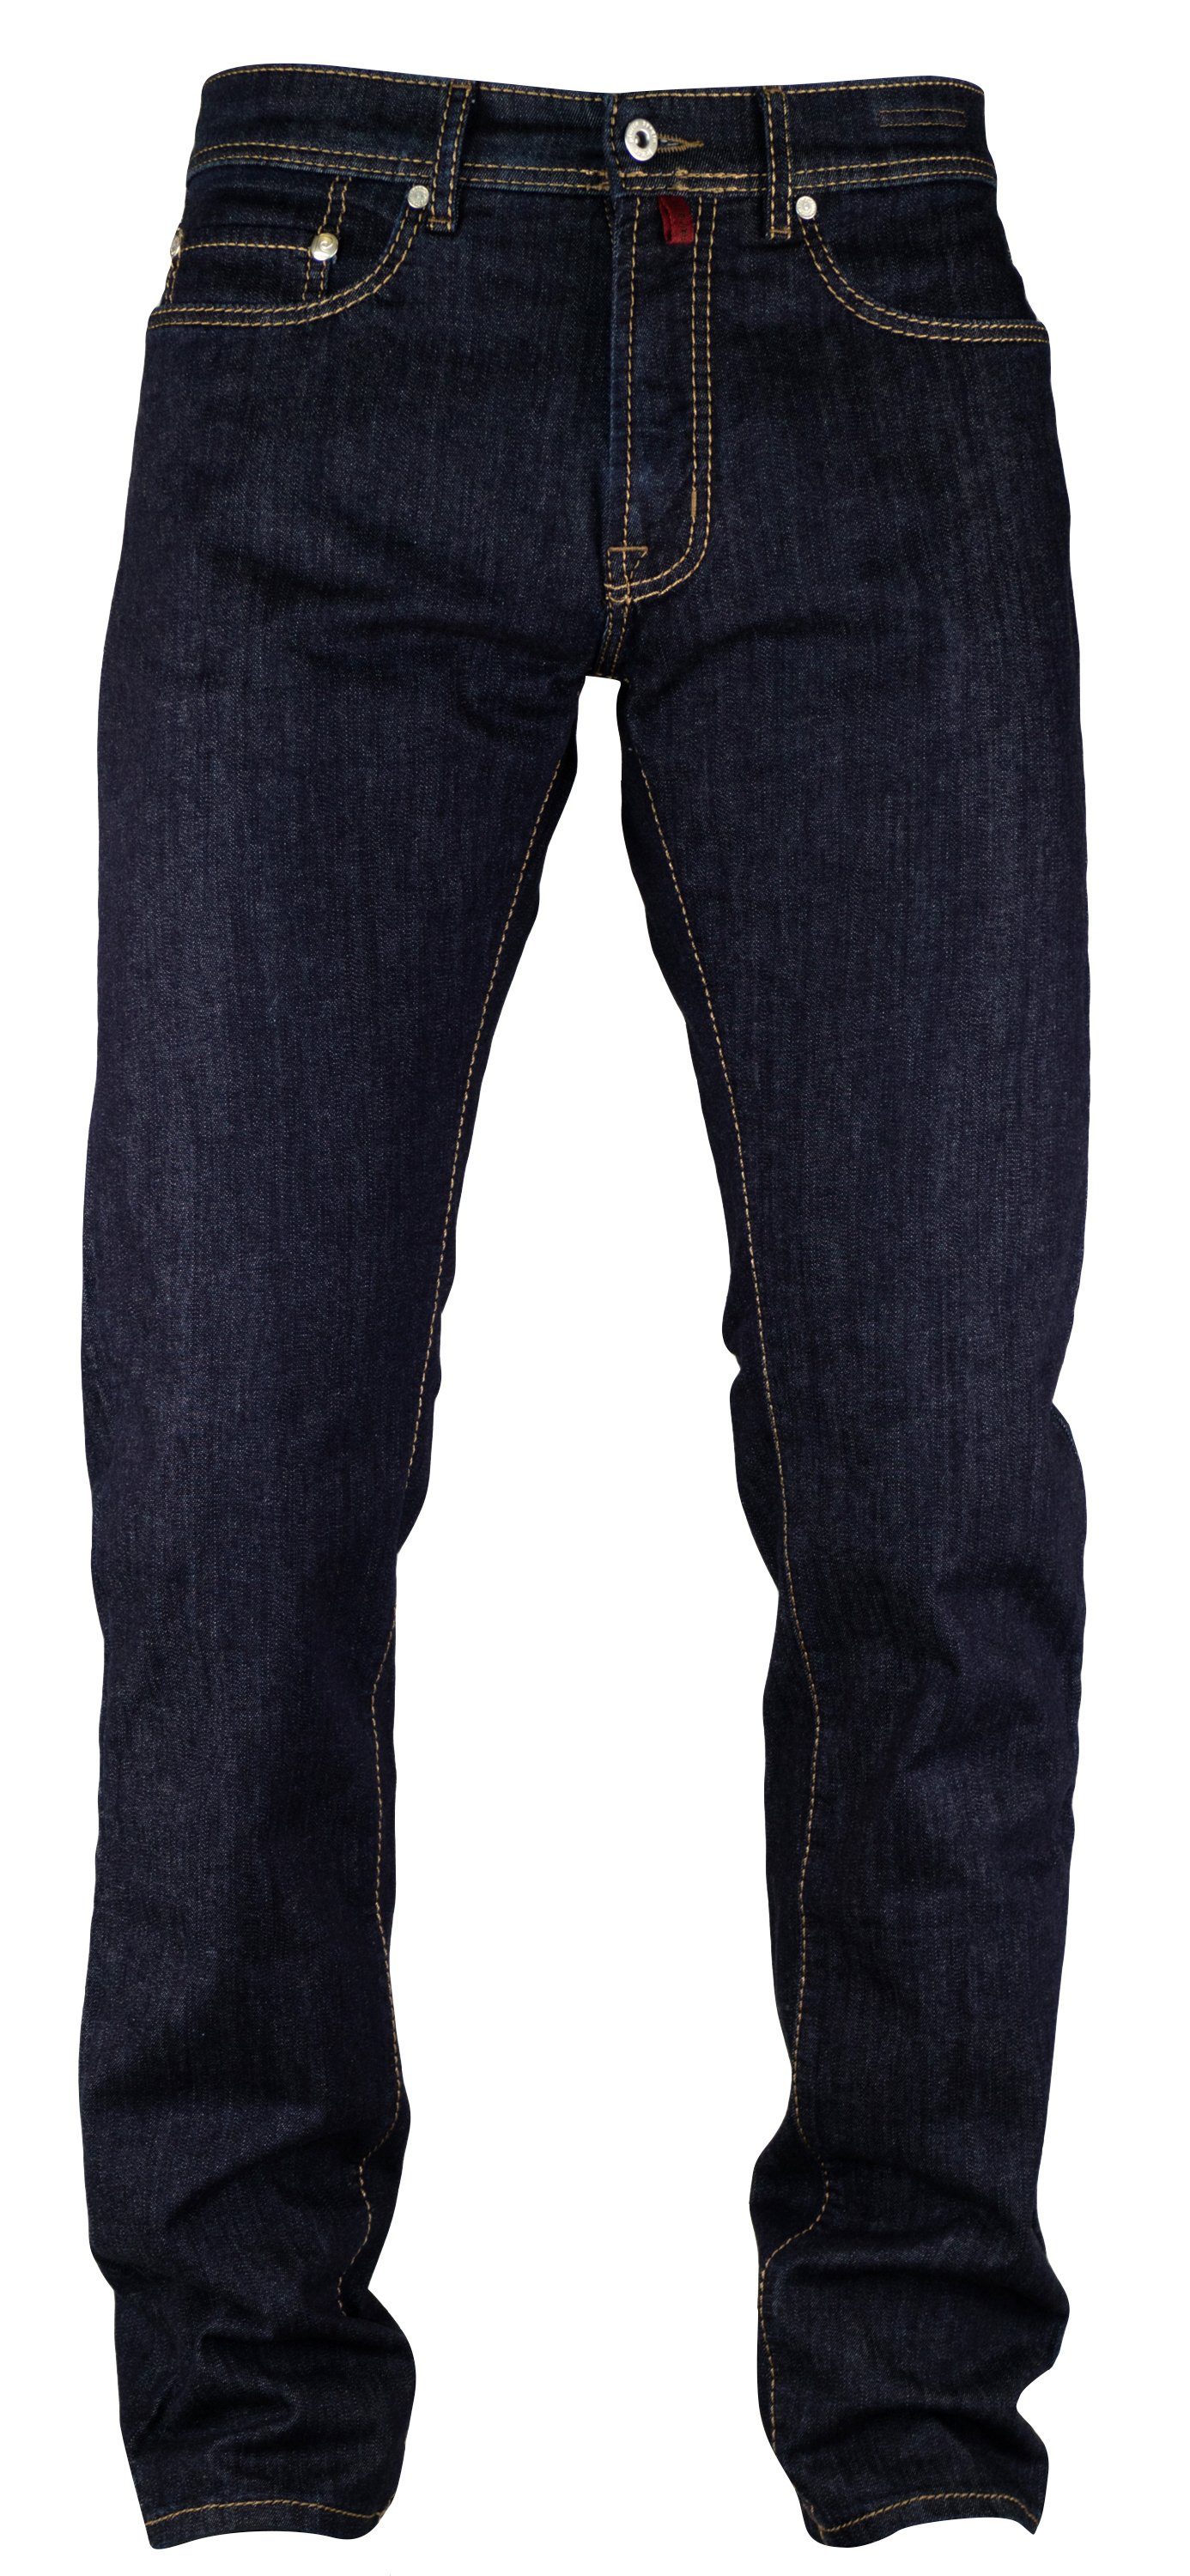 Pierre Cardin 5-Pocket-Jeans PIERRE CARDIN LYON mid blue vintage used washed 3091 7144.04 Clear Blue | Jeans